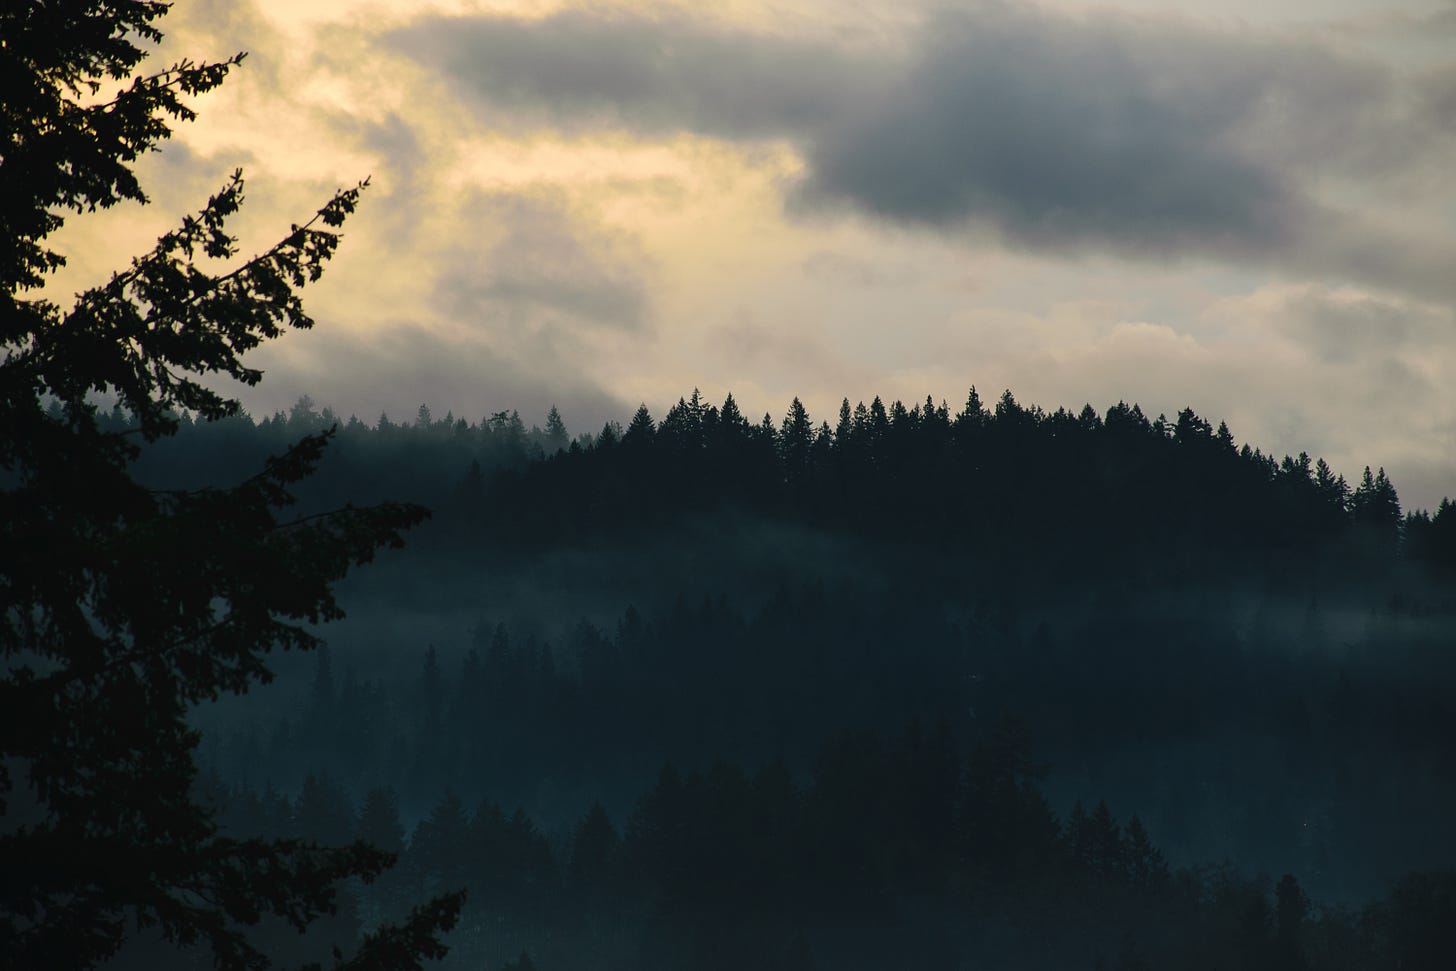 Fog rolls across the ridgeline in Eugene, Oregon.